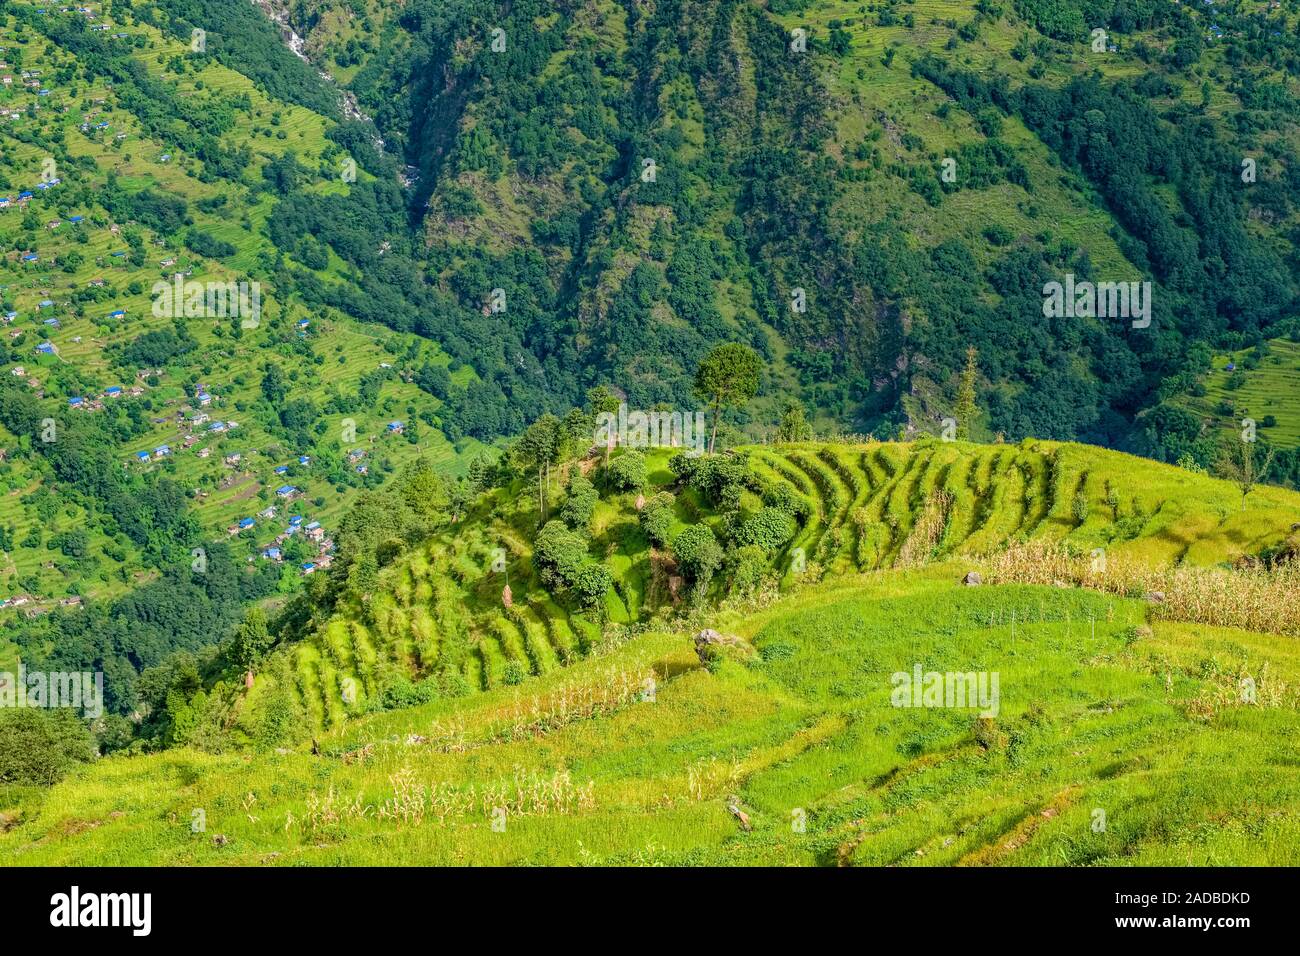 Paysage montagneux avec les rizières en terrasse, le village Bung dans la distance Banque D'Images